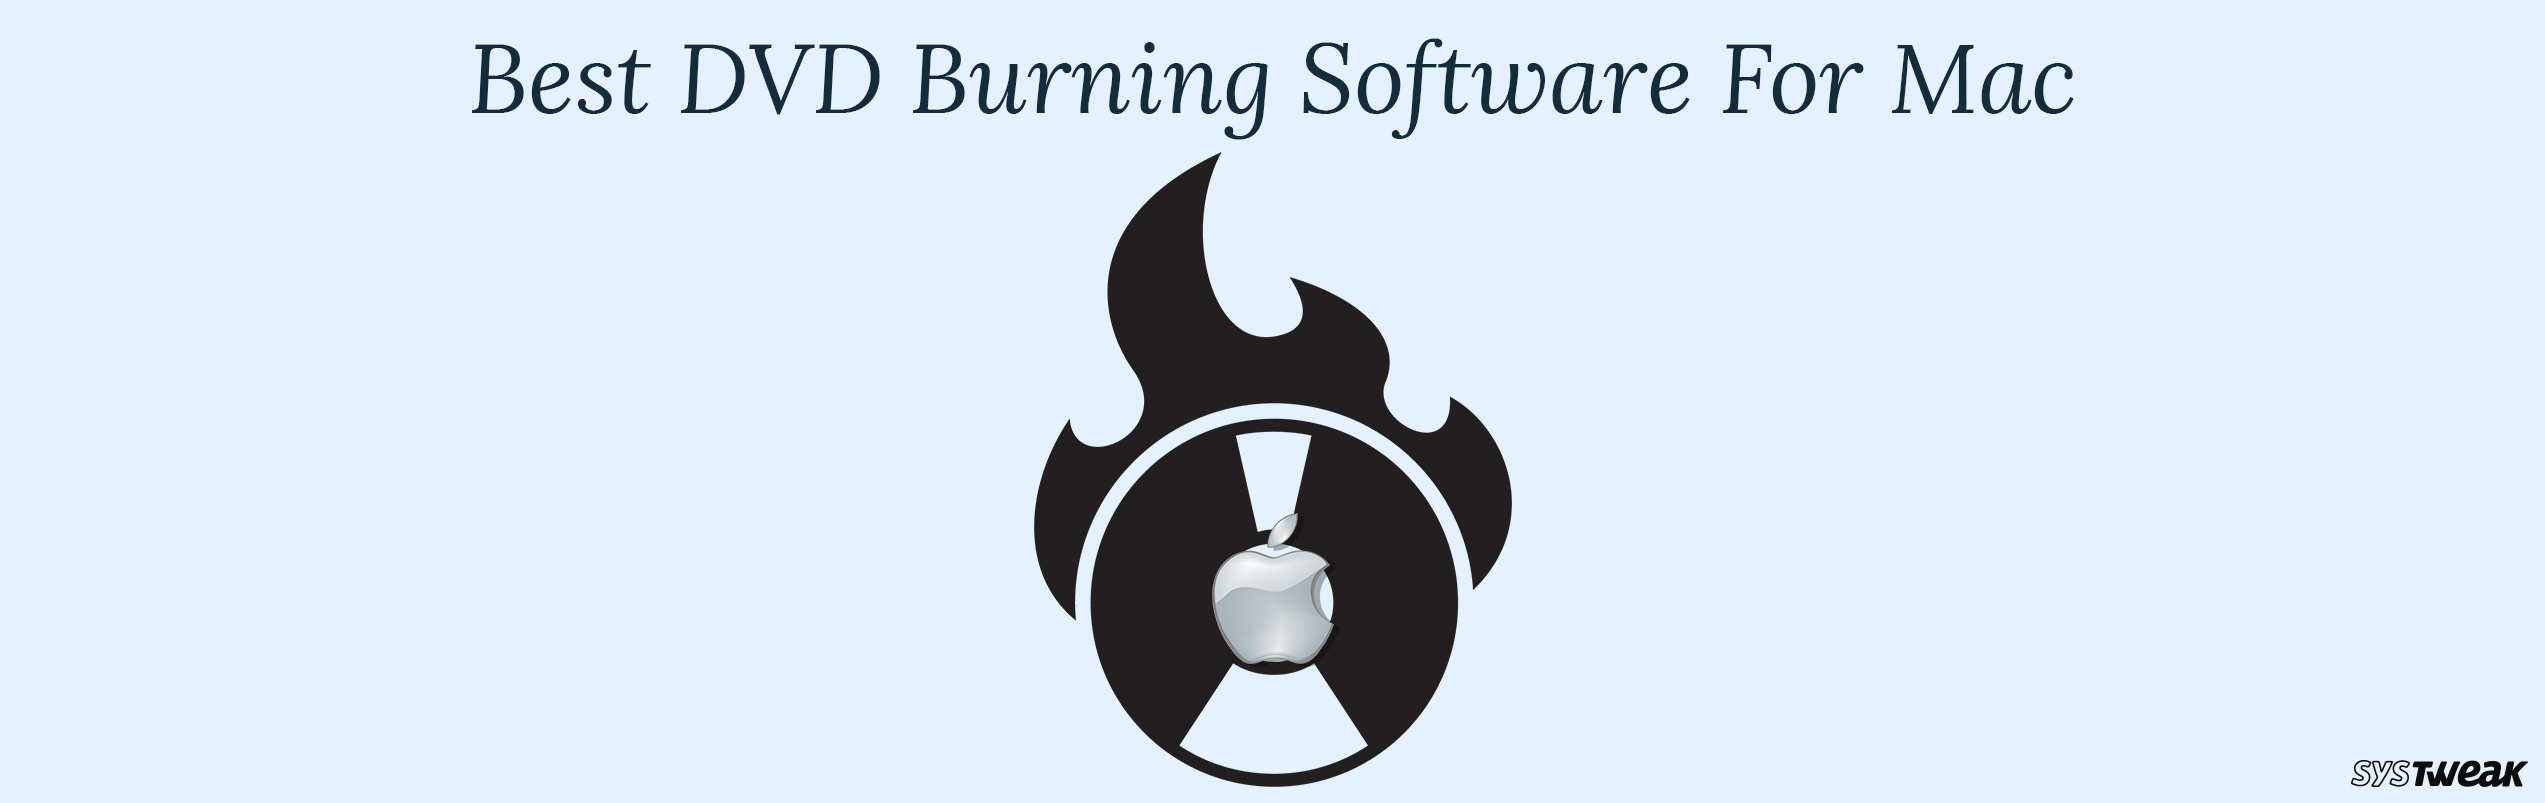 Video Dvd Burner Software For Mac